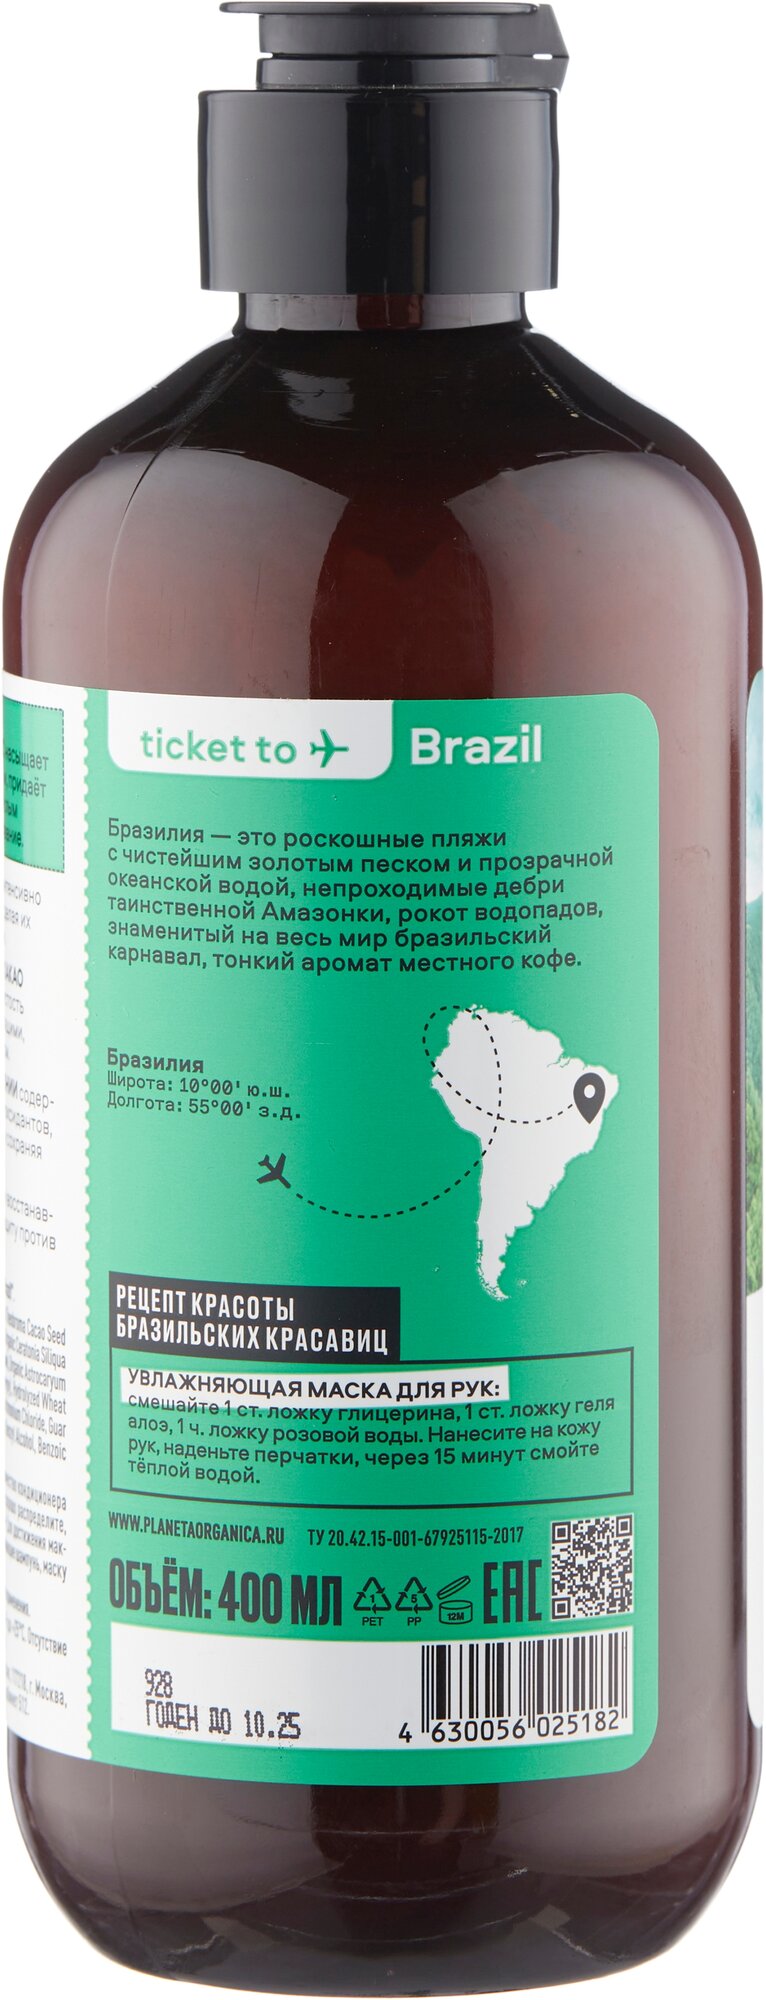 Кондиционер для волос Planeta Organica Ticket to Brazil Восстанавливающий, 400 мл - фото №13